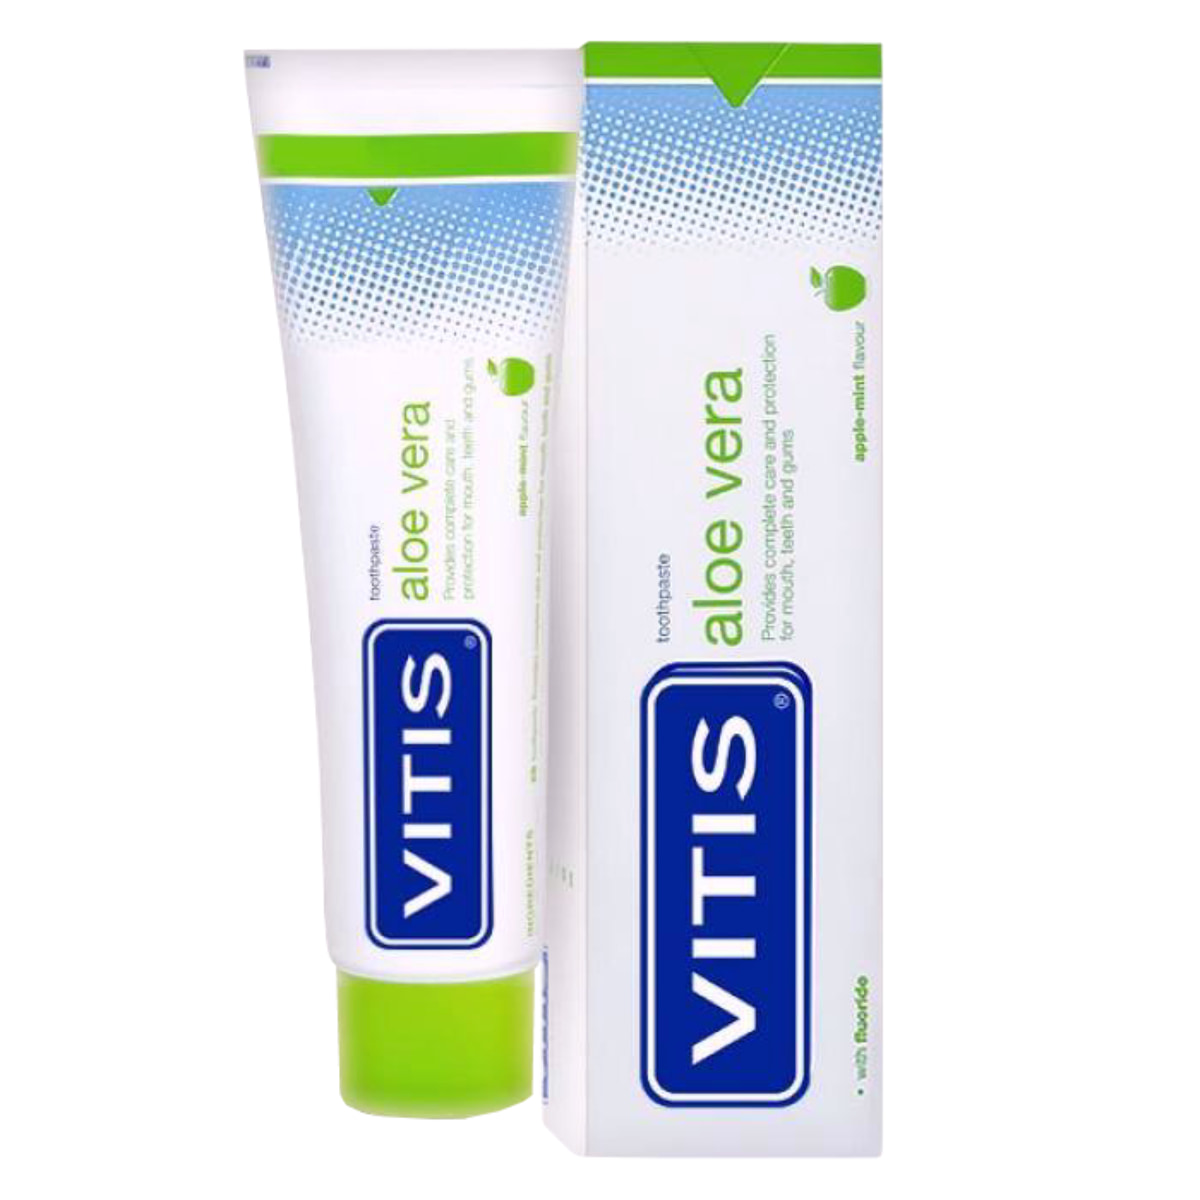 Зубная паста Vitis